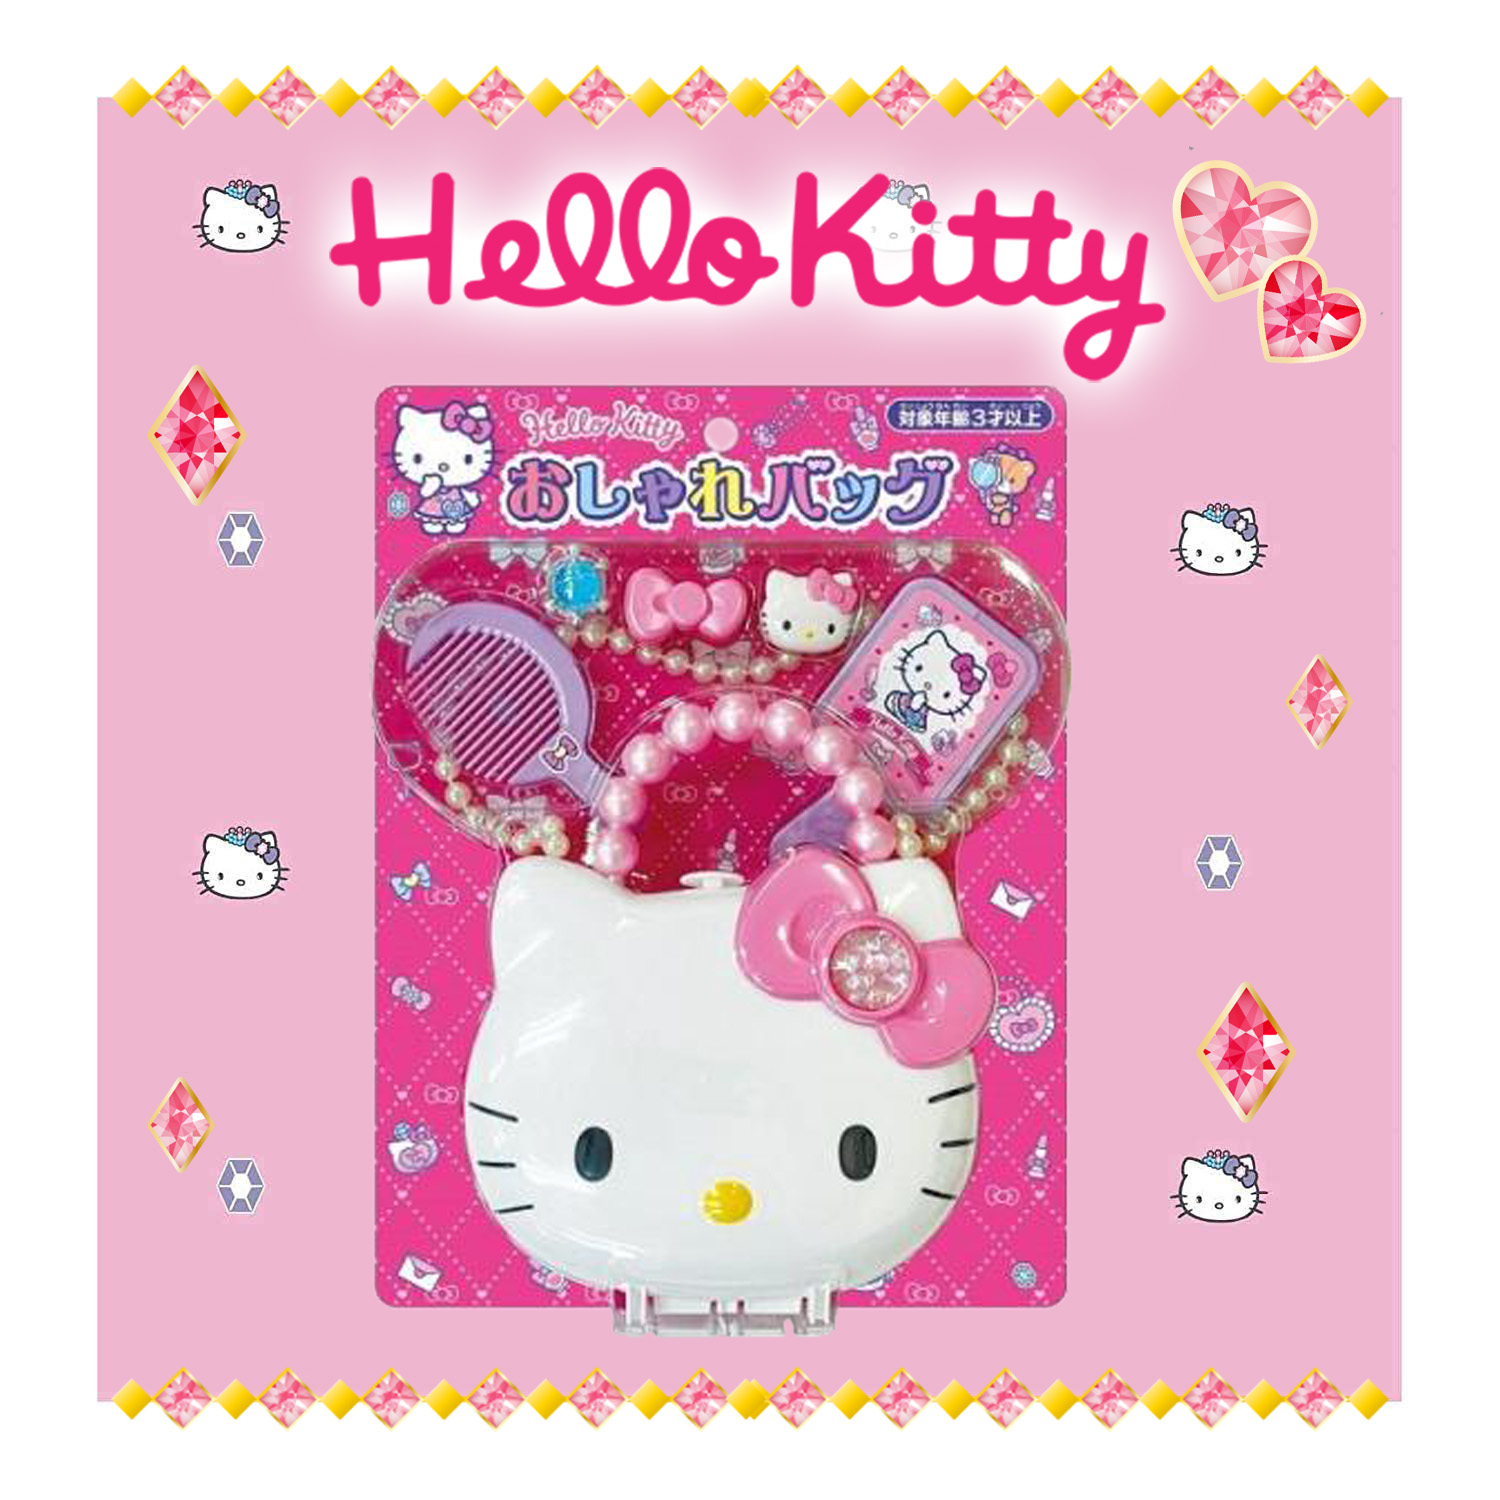 時尚配件玩具組-HELLO KITTY 三麗鷗 Sanrio 日本進口正版授權